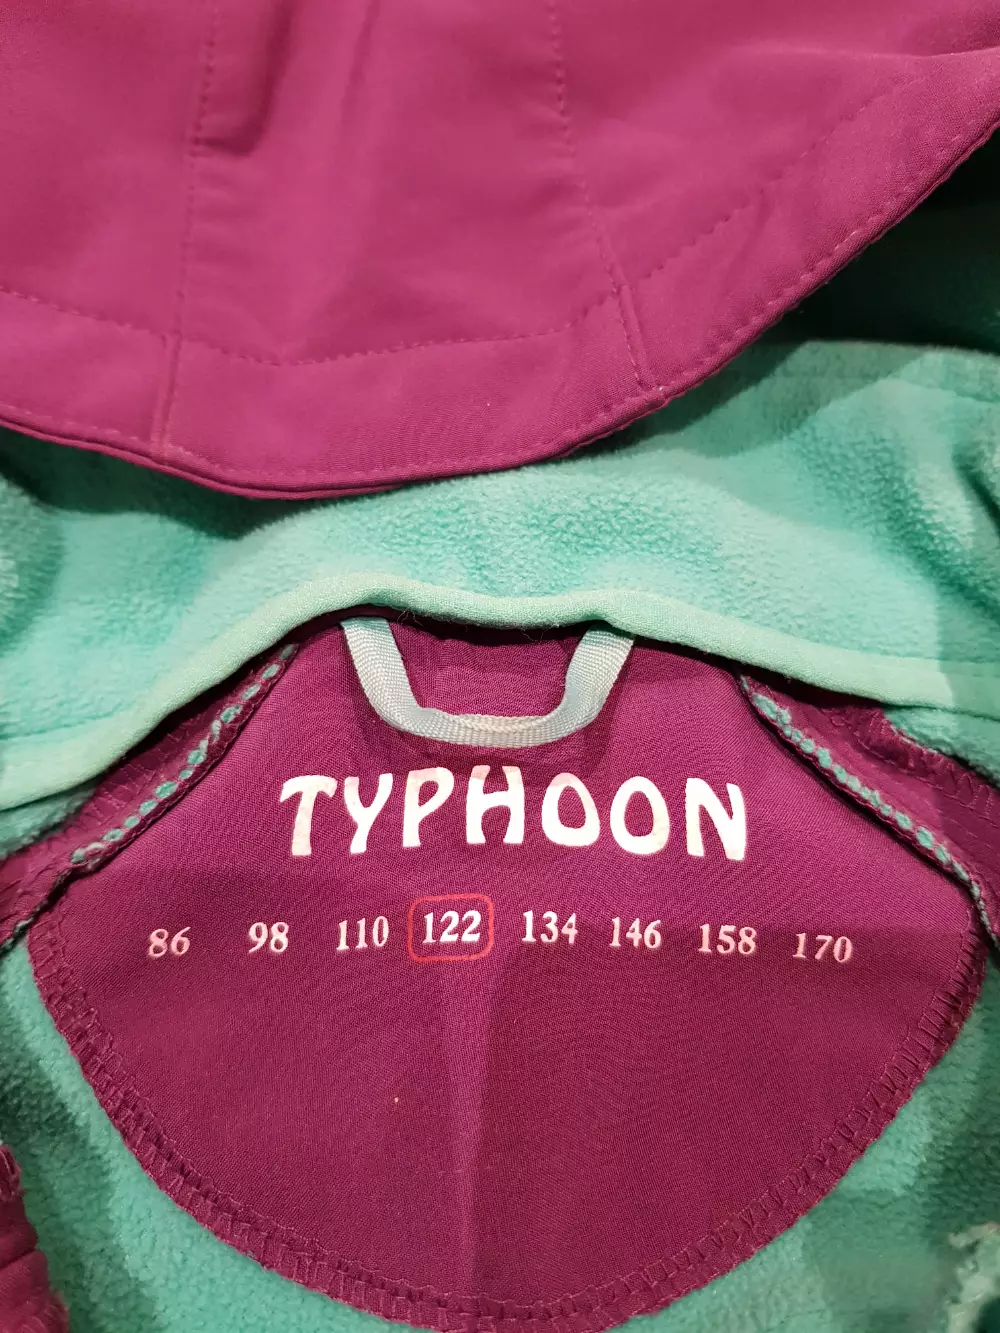 Køb Typhoon Softshell jakke størrelse 122 af Maria på Reshopper · Shop secondhand til børn, mor og bolig